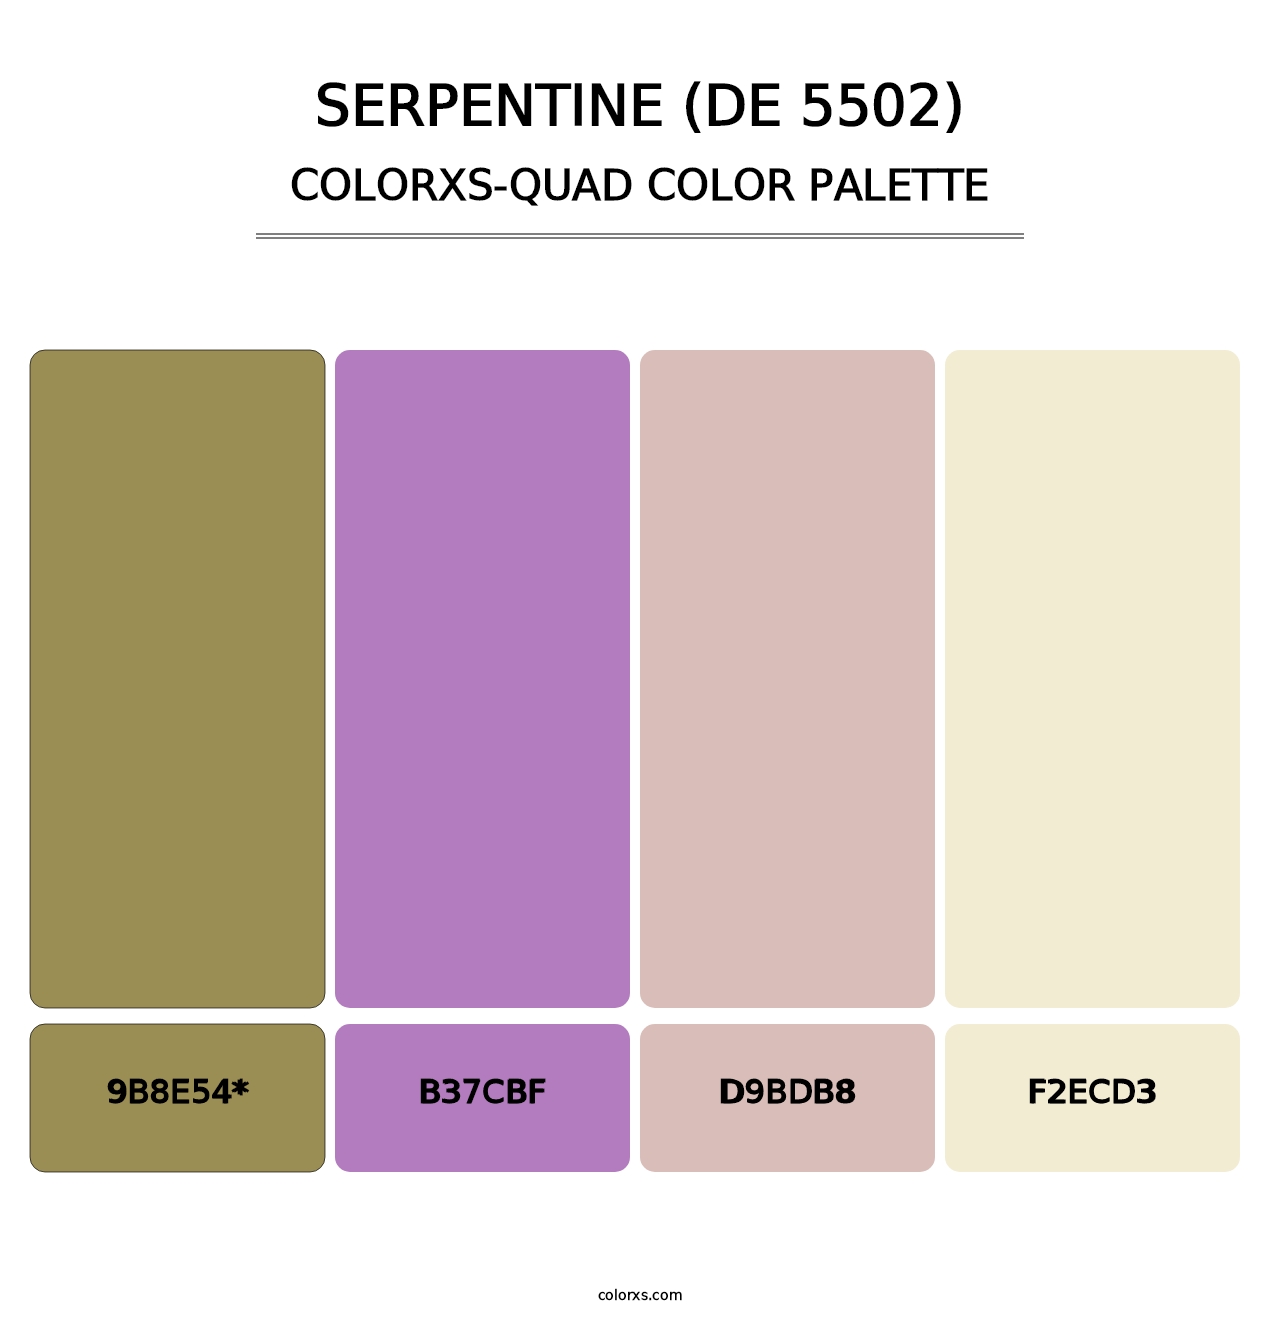 Serpentine (DE 5502) - Colorxs Quad Palette